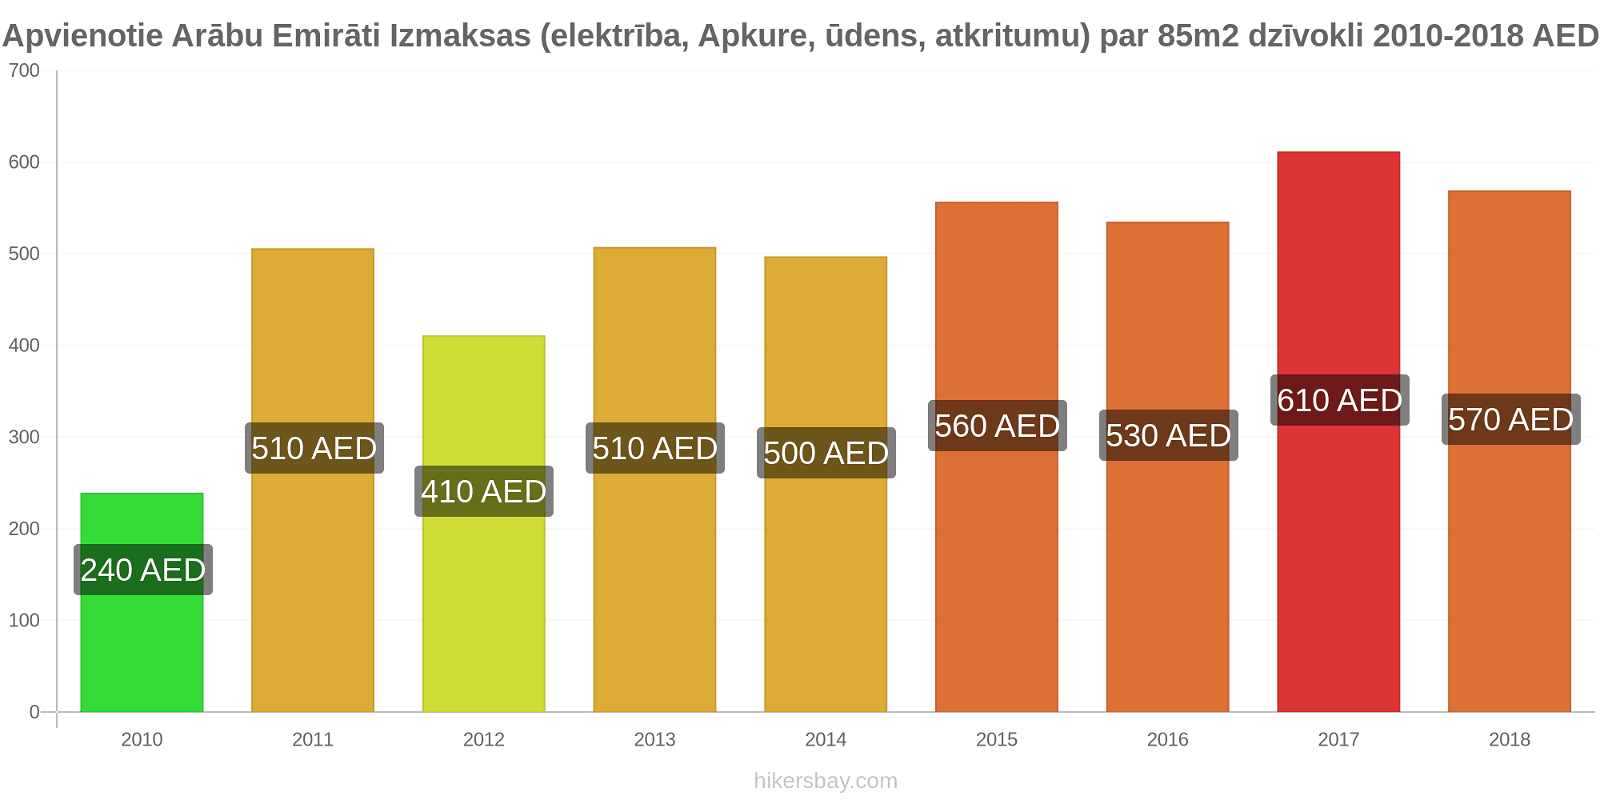 Apvienotie Arābu Emirāti cenu izmaiņas Izmaksas (elektrība, apkure, ūdens, atkritumi) par 85m2 dzīvokli hikersbay.com